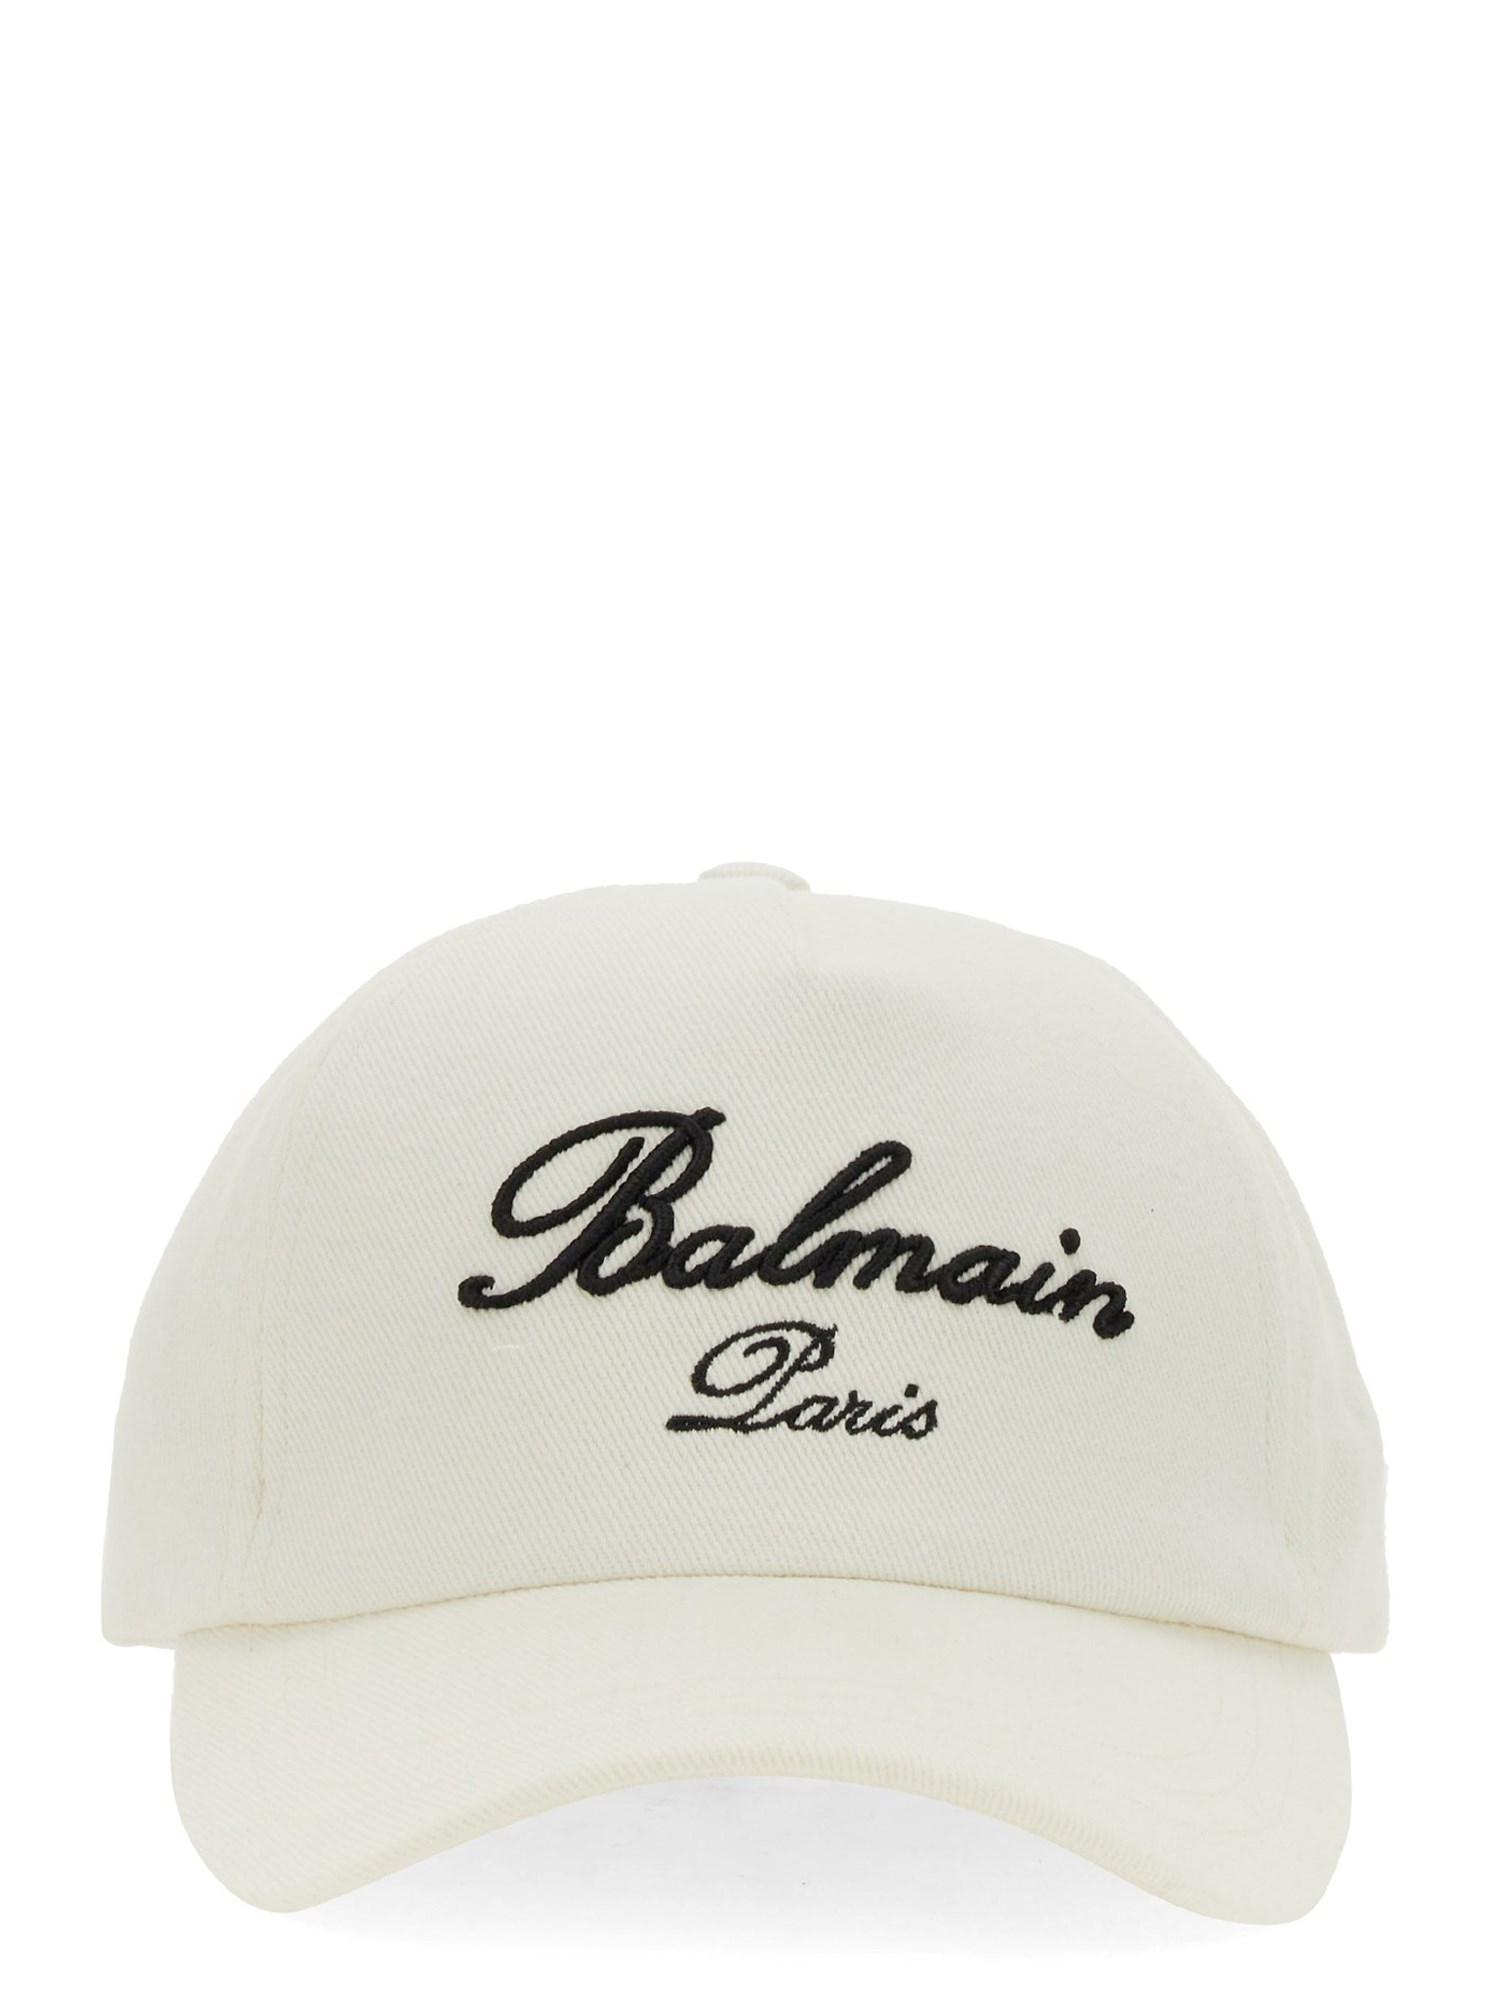 balmain baseball hat with logo